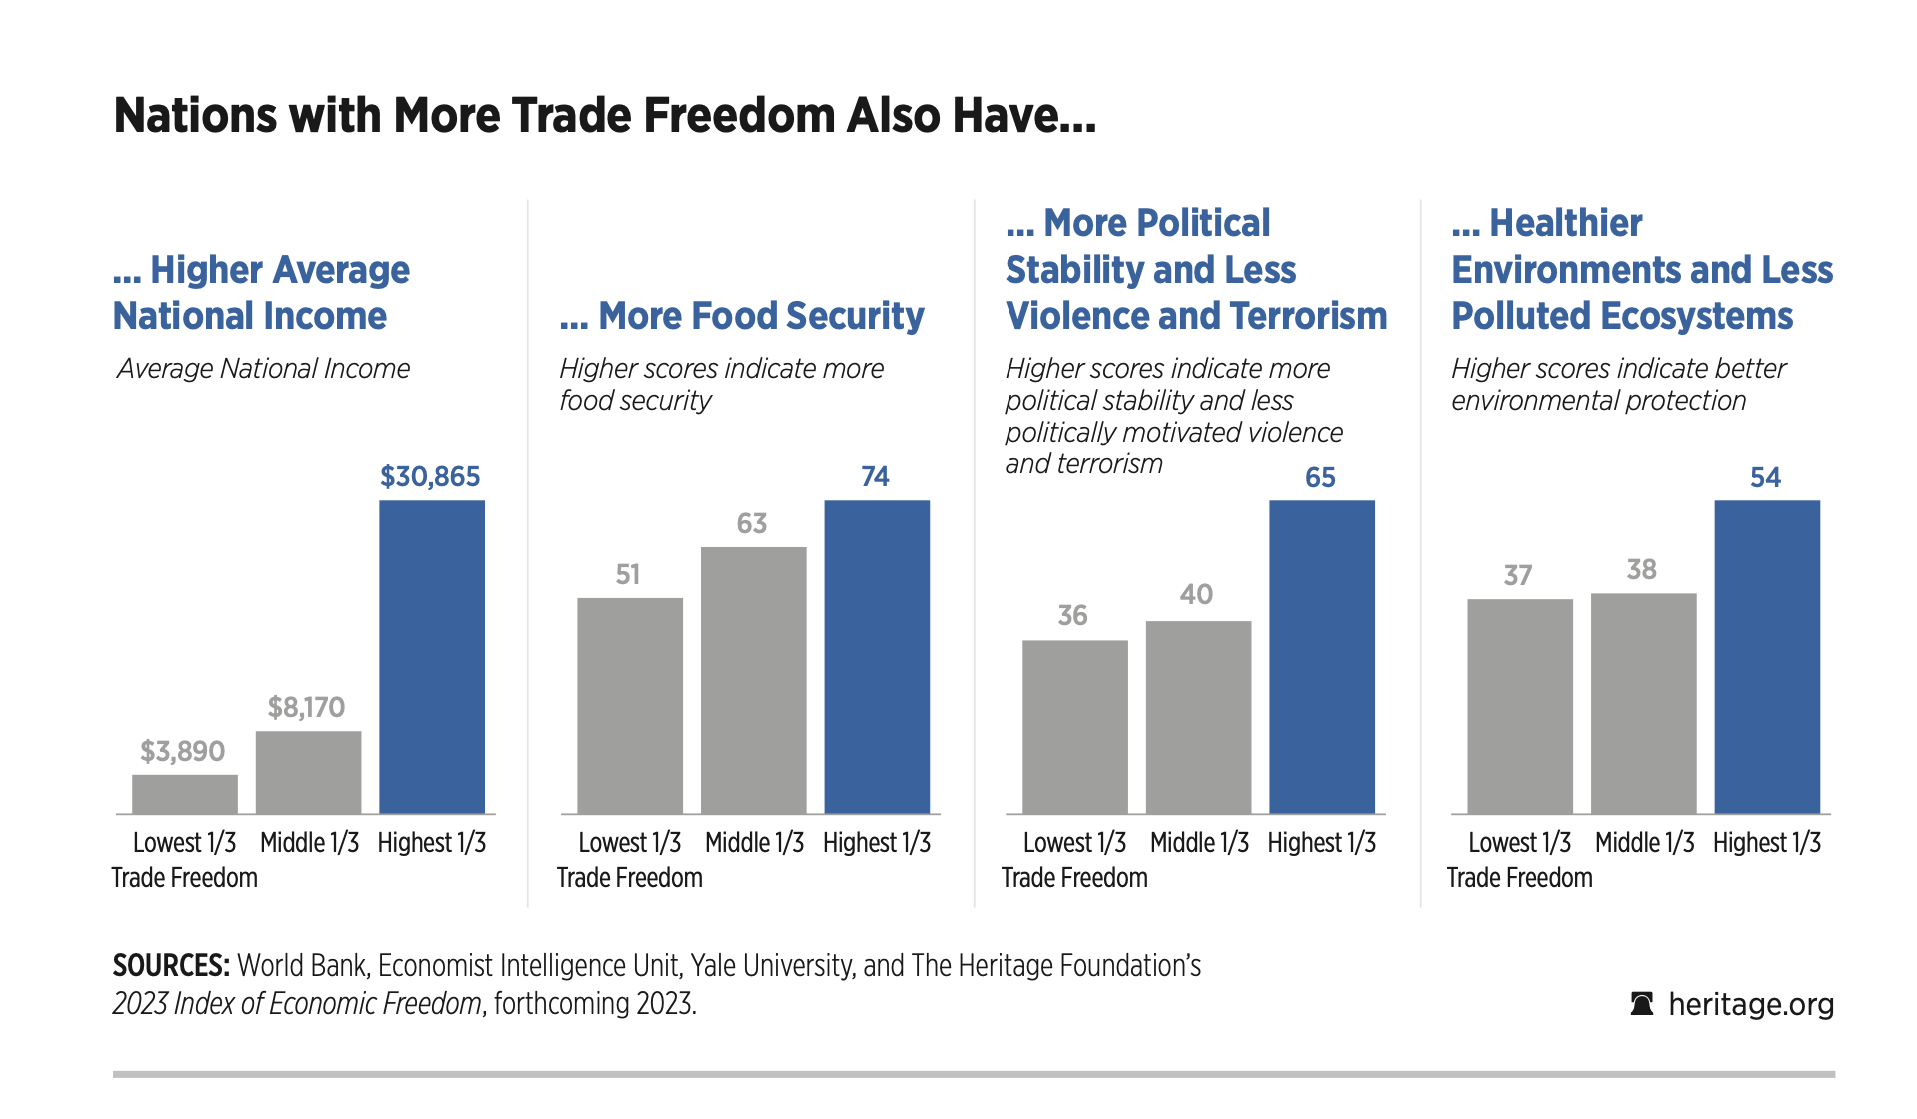 Heritage Releases 2023 Index of Economic Freedom Trade Freedom Scores